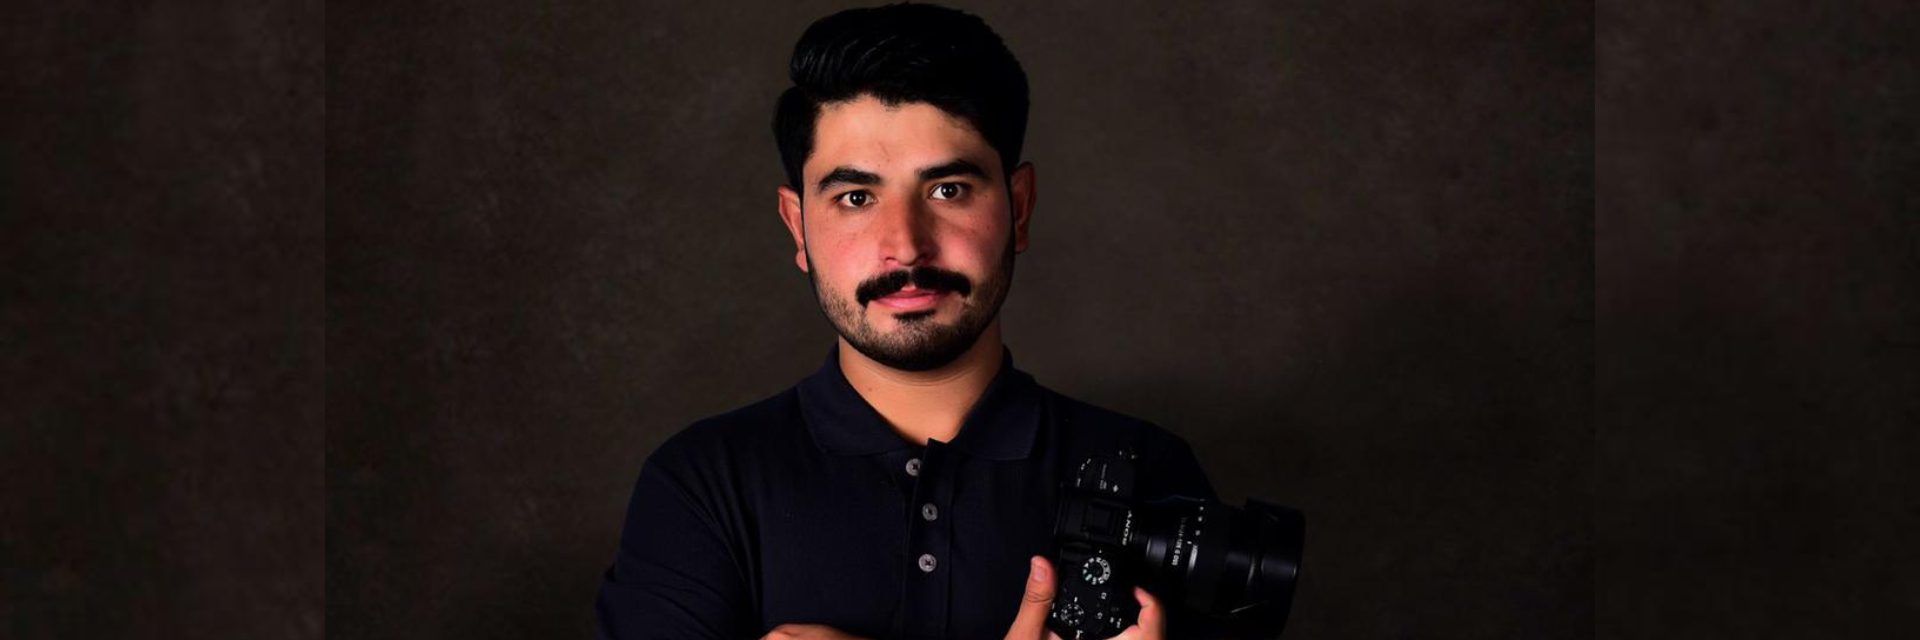 Nhiếp ảnh gia Omer Khan, người thích chụp sự sống, trong chuyến trốn thoát may mắn khỏi Afghanistan